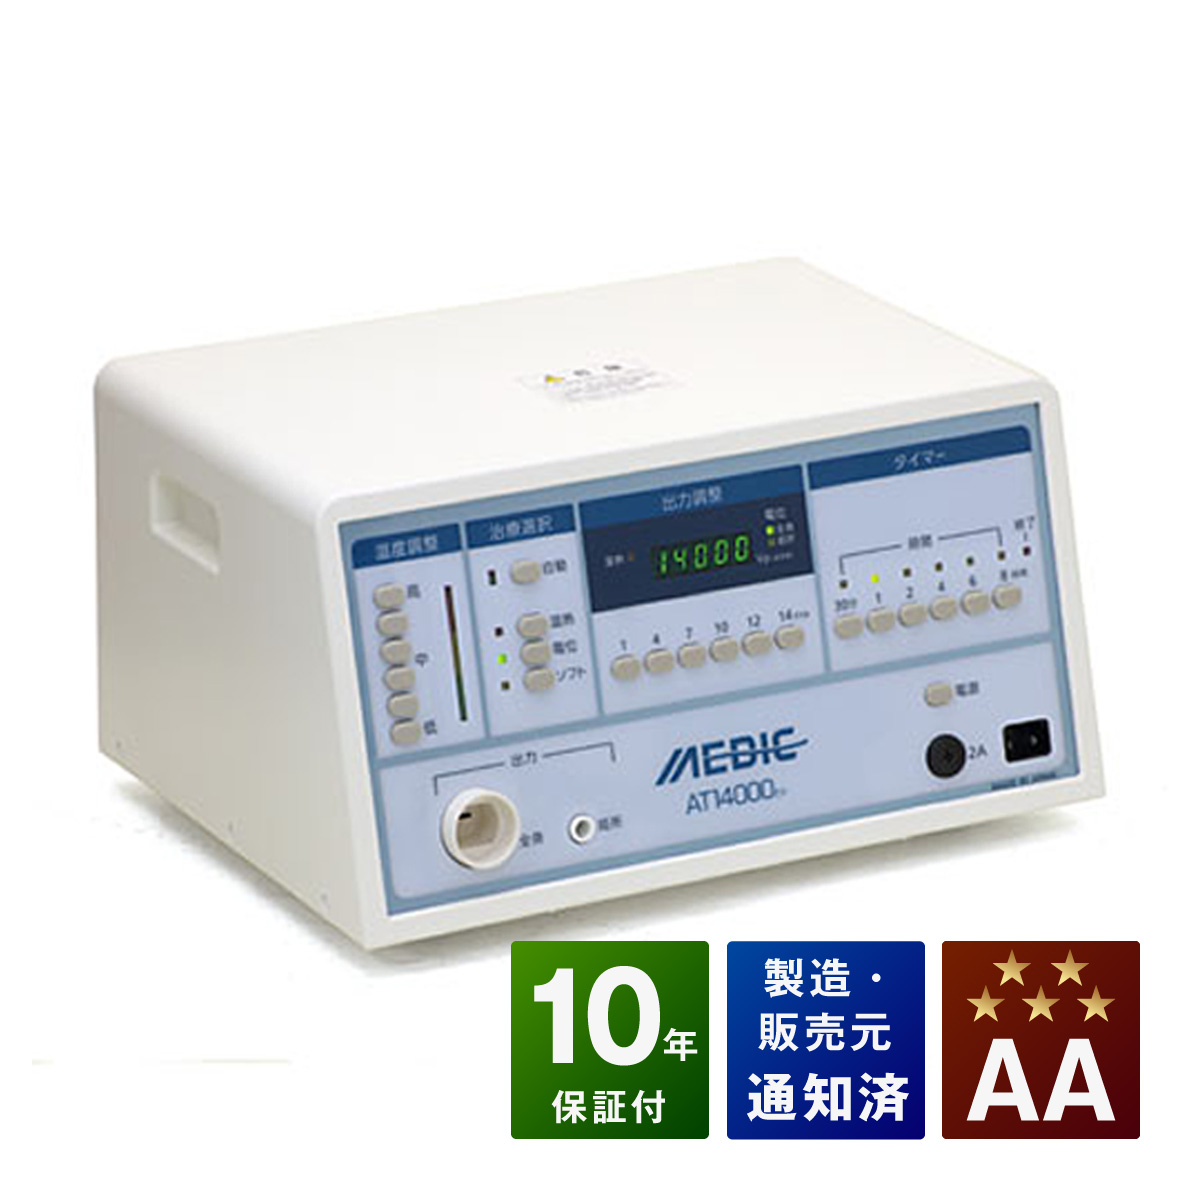 me Dick AT-14000EX б/у AA разряд 10 год гарантия Япония собственный medical аппарат для лечения статическим электричеством 